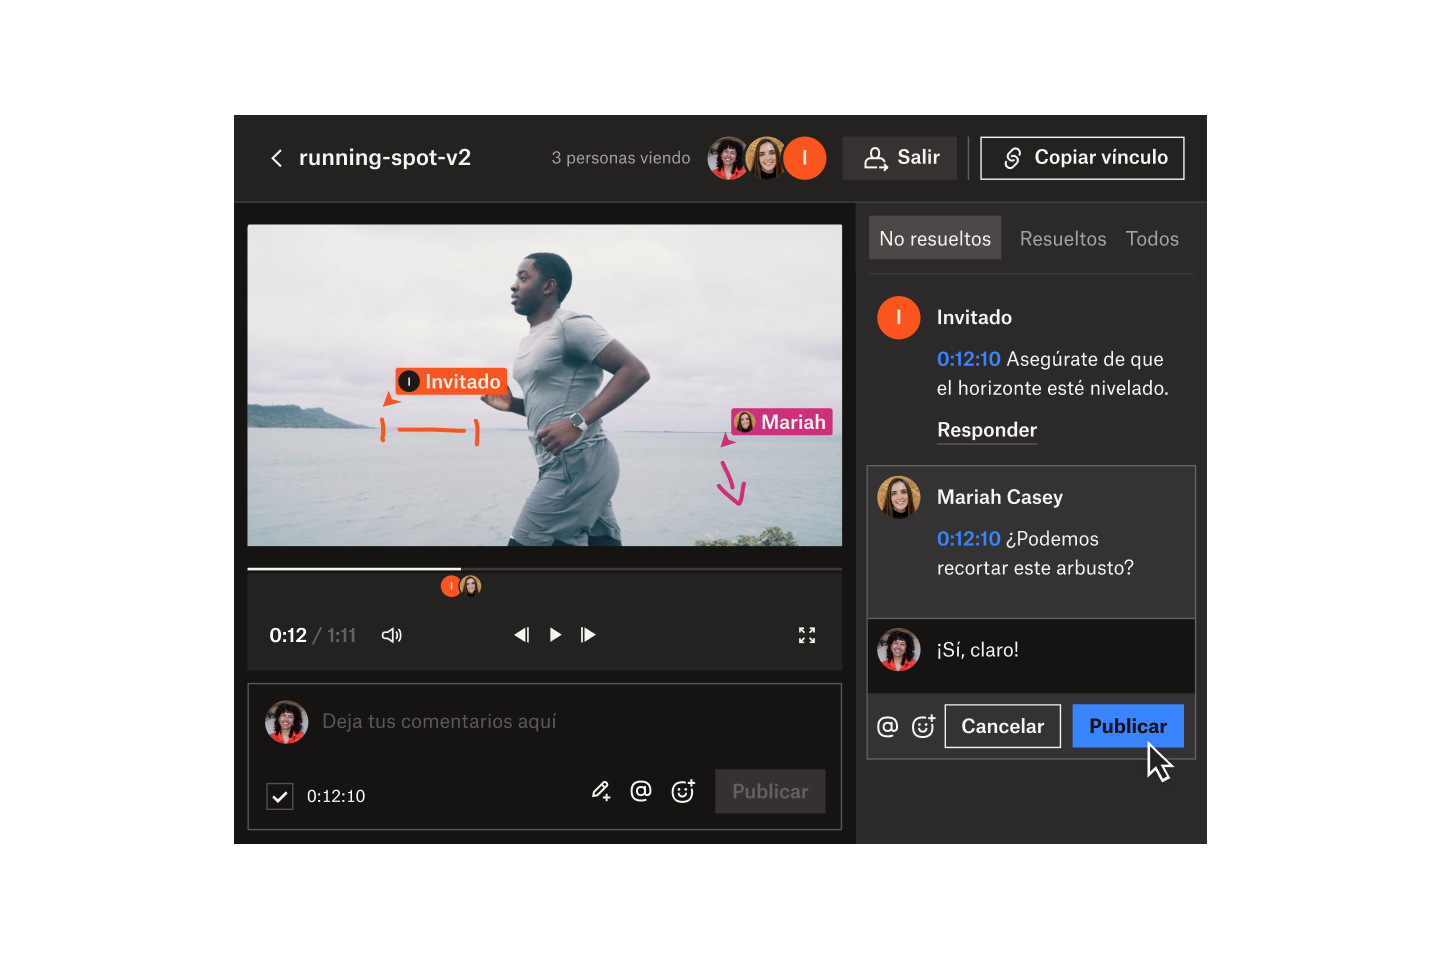 Invitado y Mariah Casey marcando un fotograma y agregando comentarios en un video titulado running-spot-v2 en Dropbox Replay